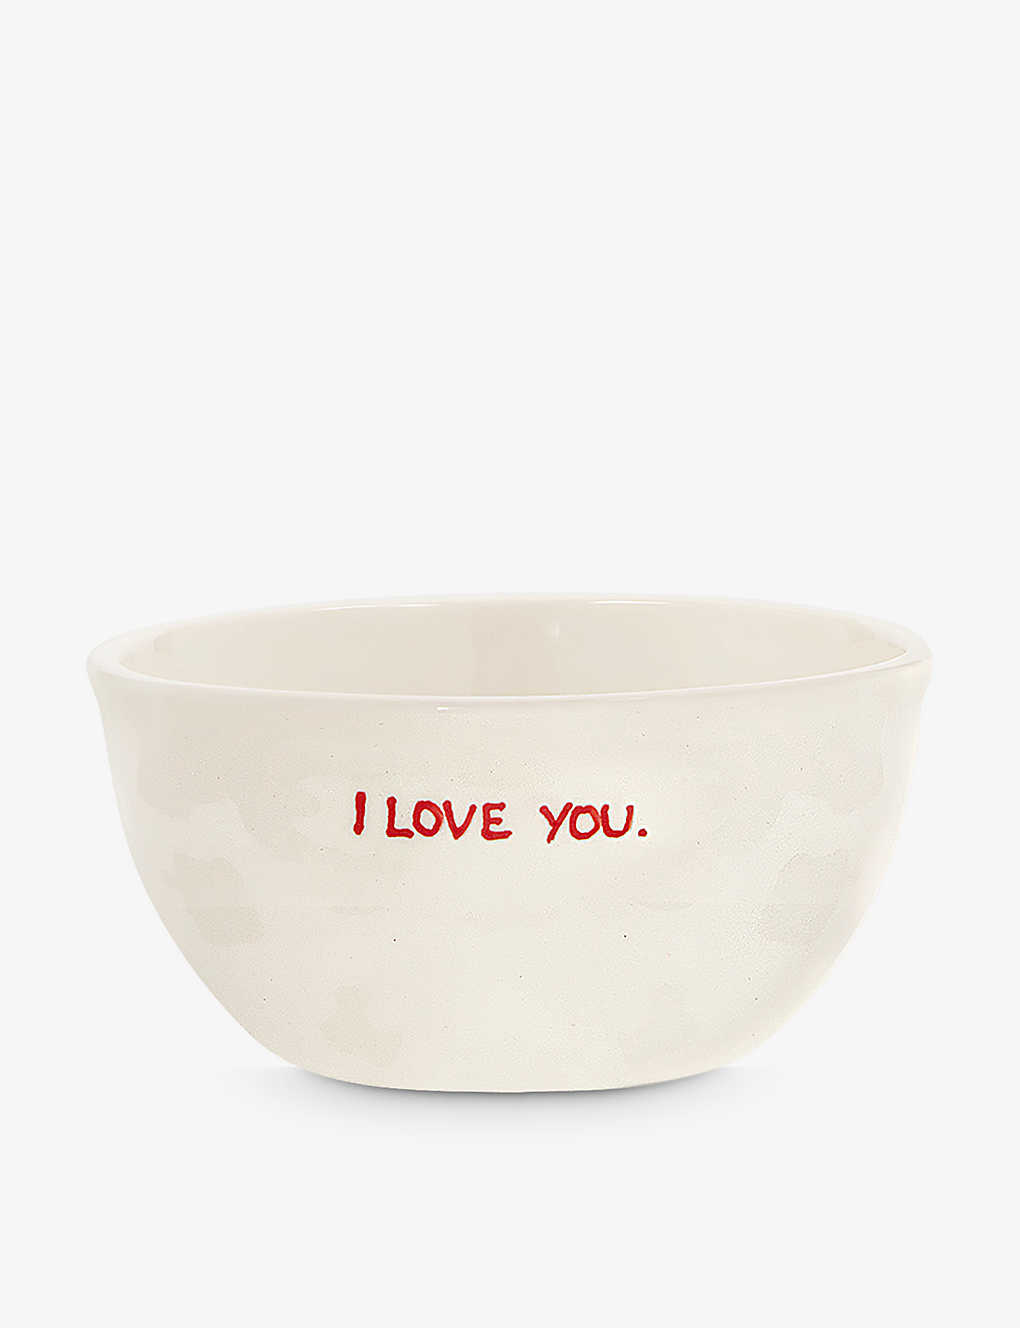 Anna + Nina I Love You Ceramic Bowl 14cm In White